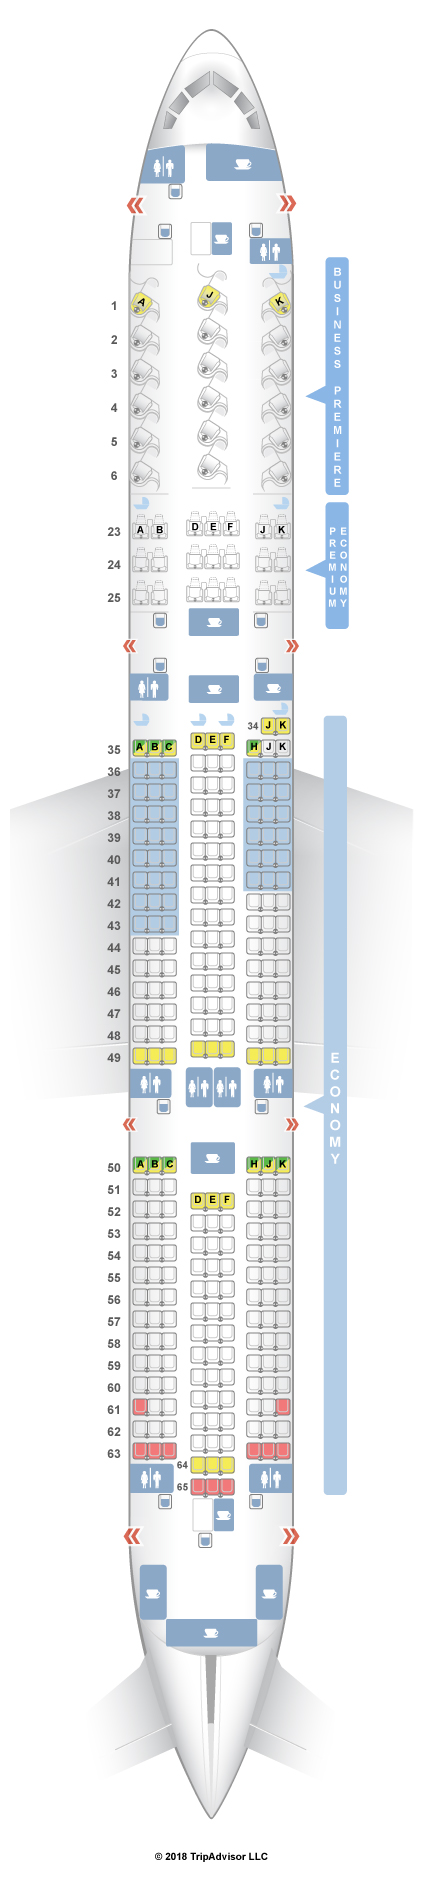 Boeing 787 9 Seat Map Afp Cv